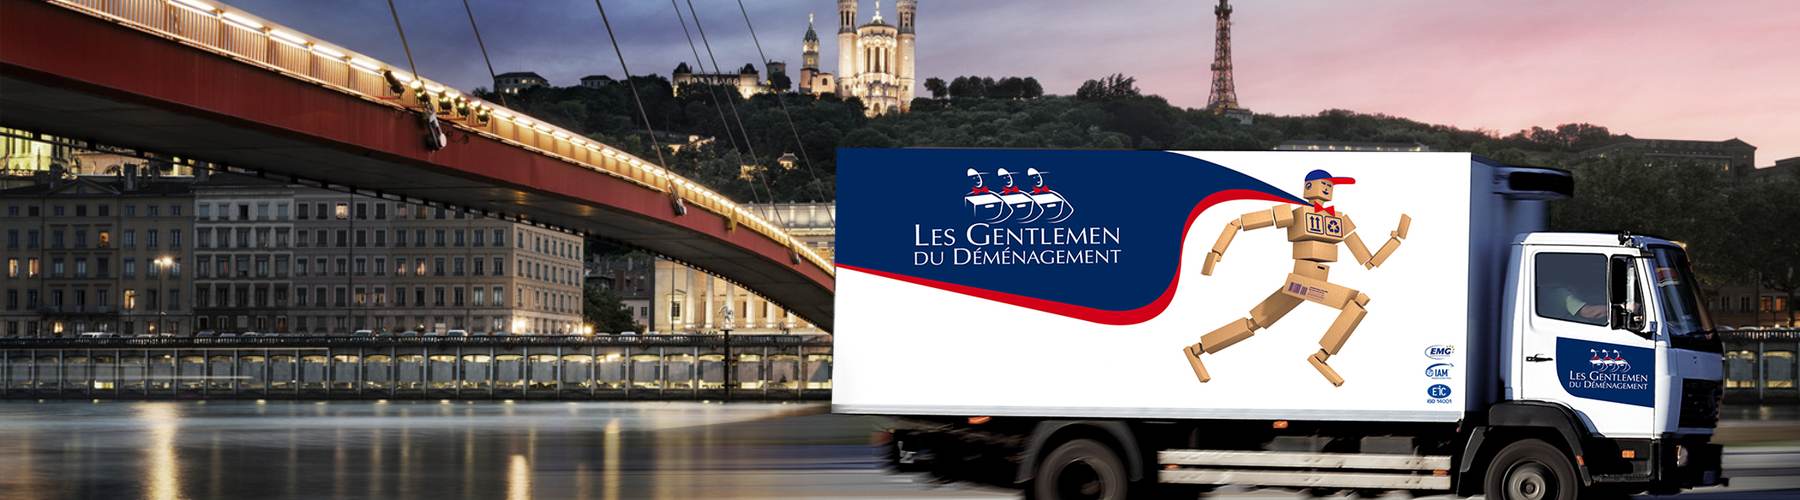 Les Gentlemen du déménagement à Lyon avec Béchard transports